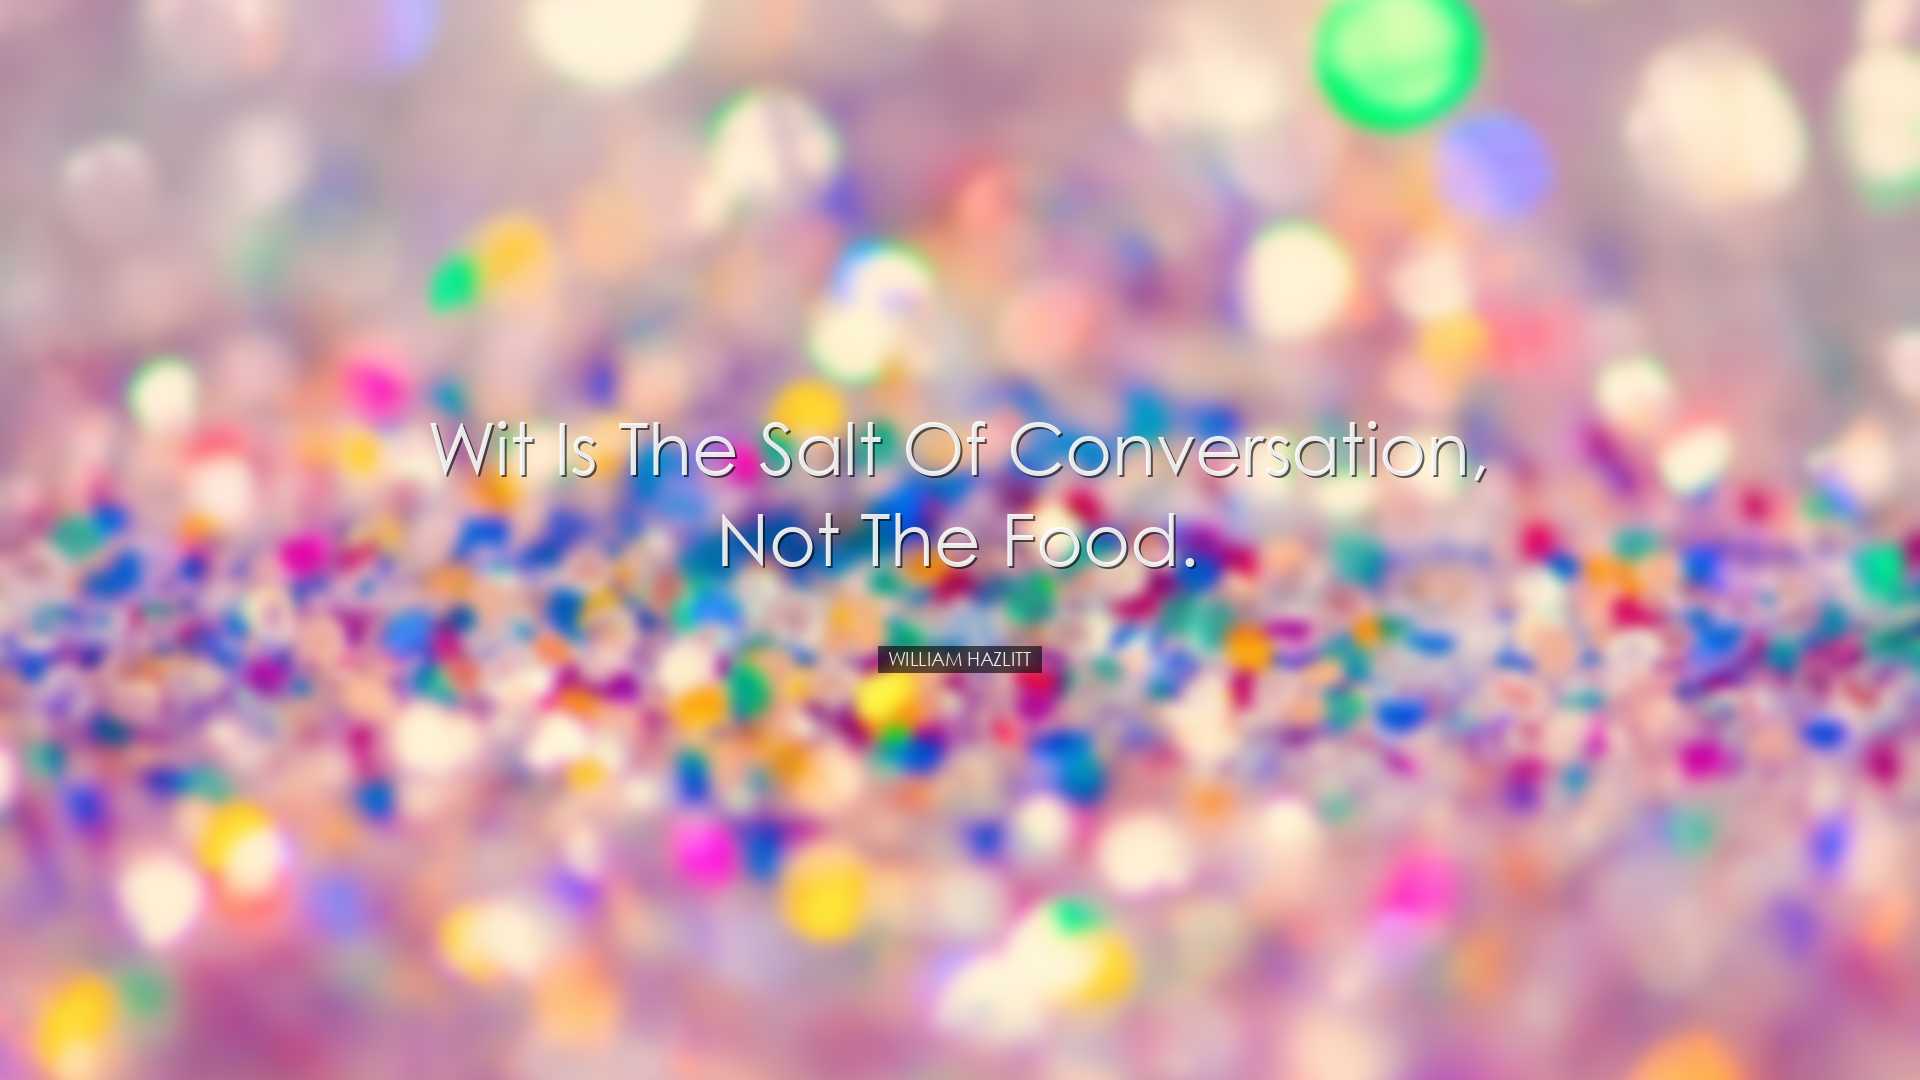 Wit is the salt of conversation, not the food. - William Hazlitt